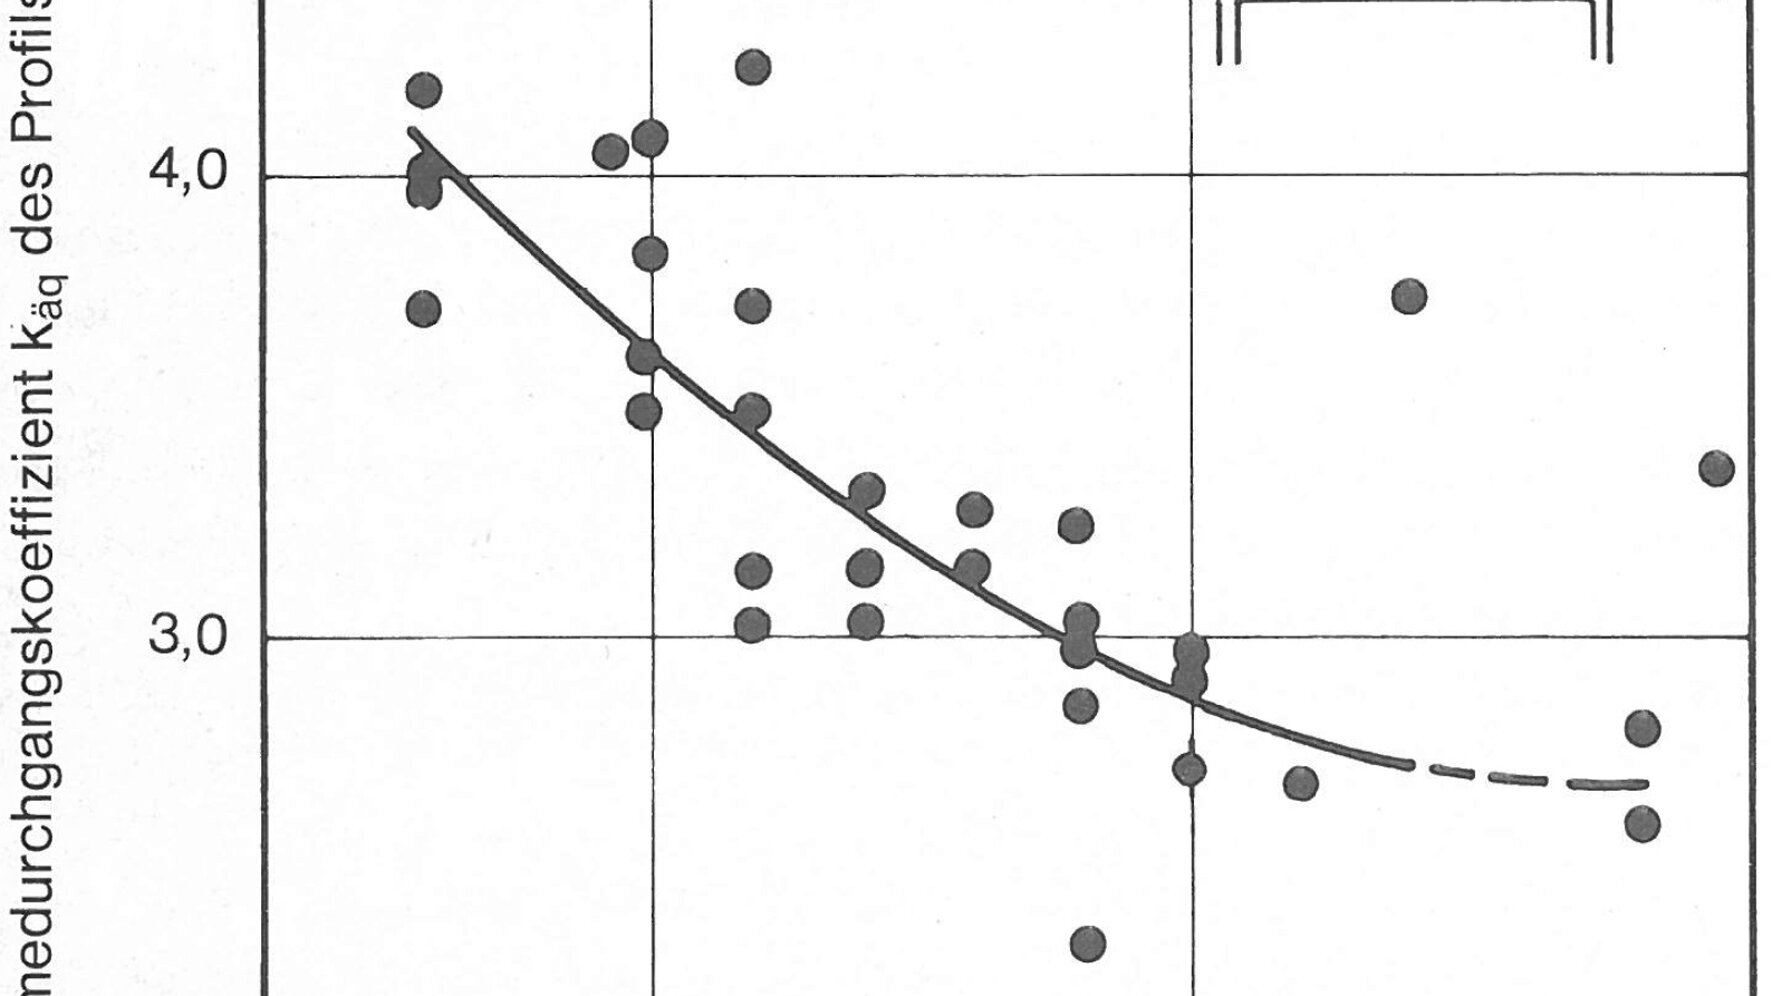 Das Diagramm zeigt auf der y-Achse Wärmedurchgangskoeffizient kaq des Profils in W/m2k und auf der x-Achse den Schalenabstand a im mm. Nähere Informationen zur Darstellung erhalten Sie auf Anfrage unter +49 8031 261-2150. 